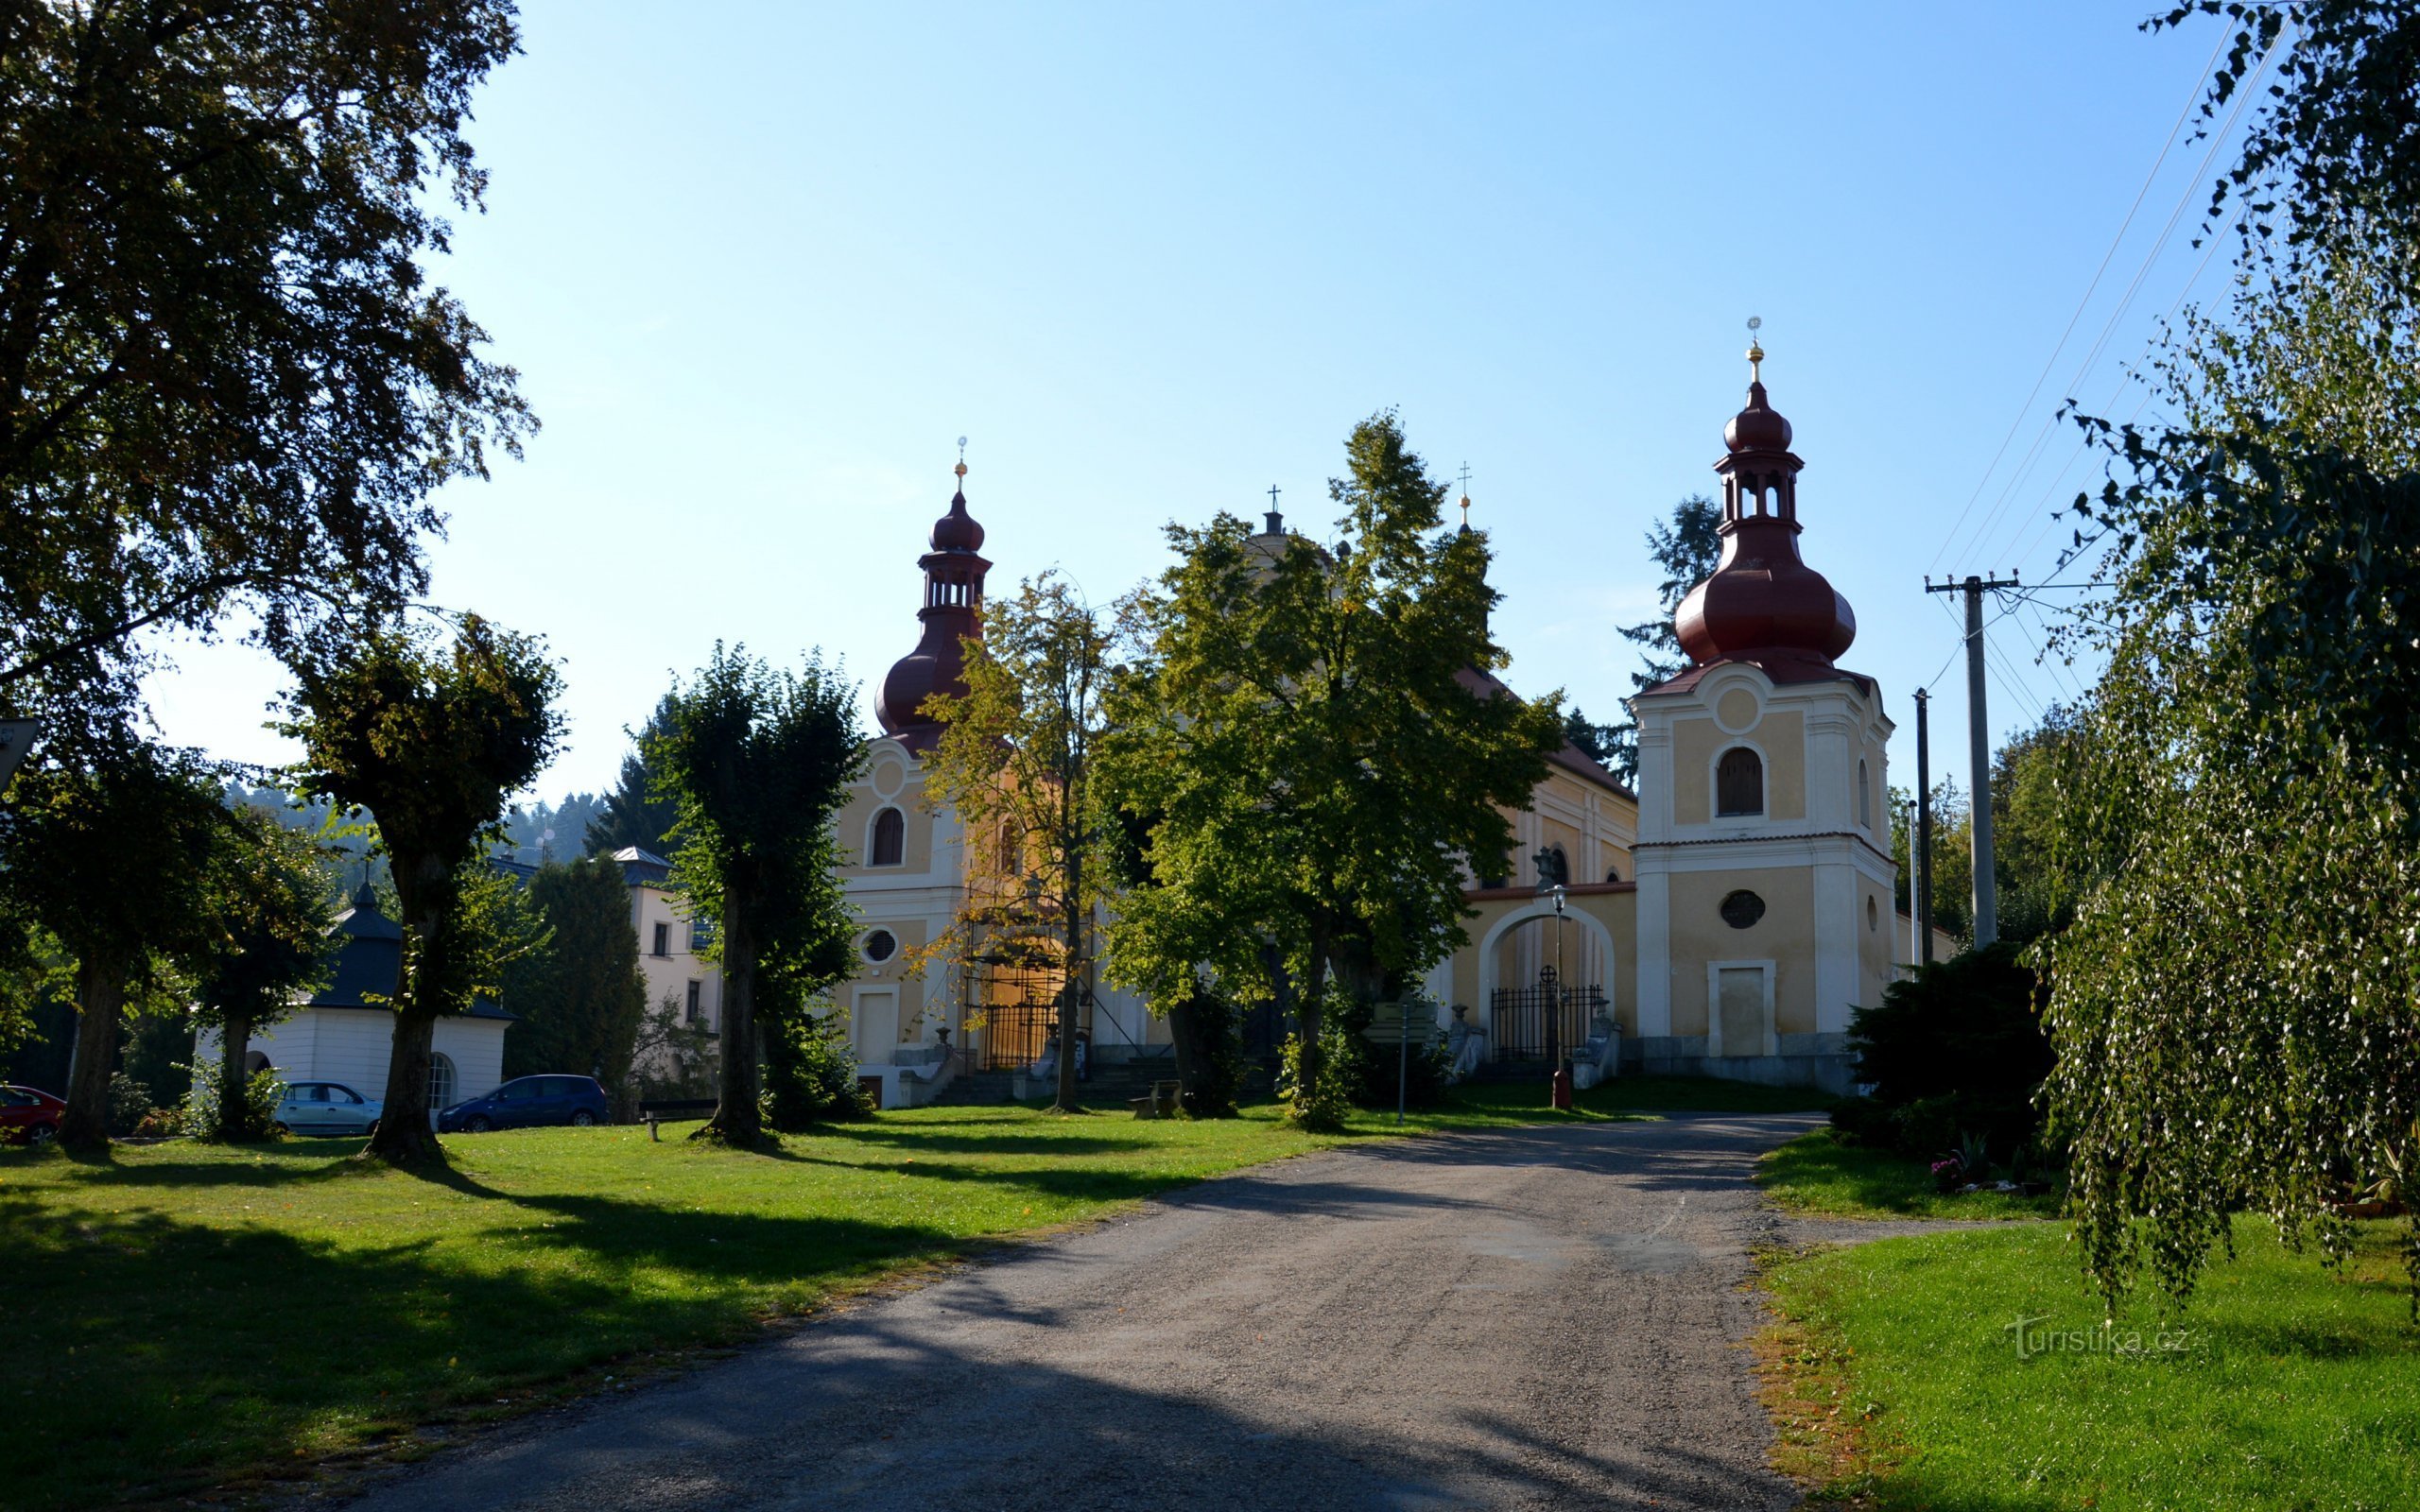 Sudějov - praça com a igreja de St. Ana